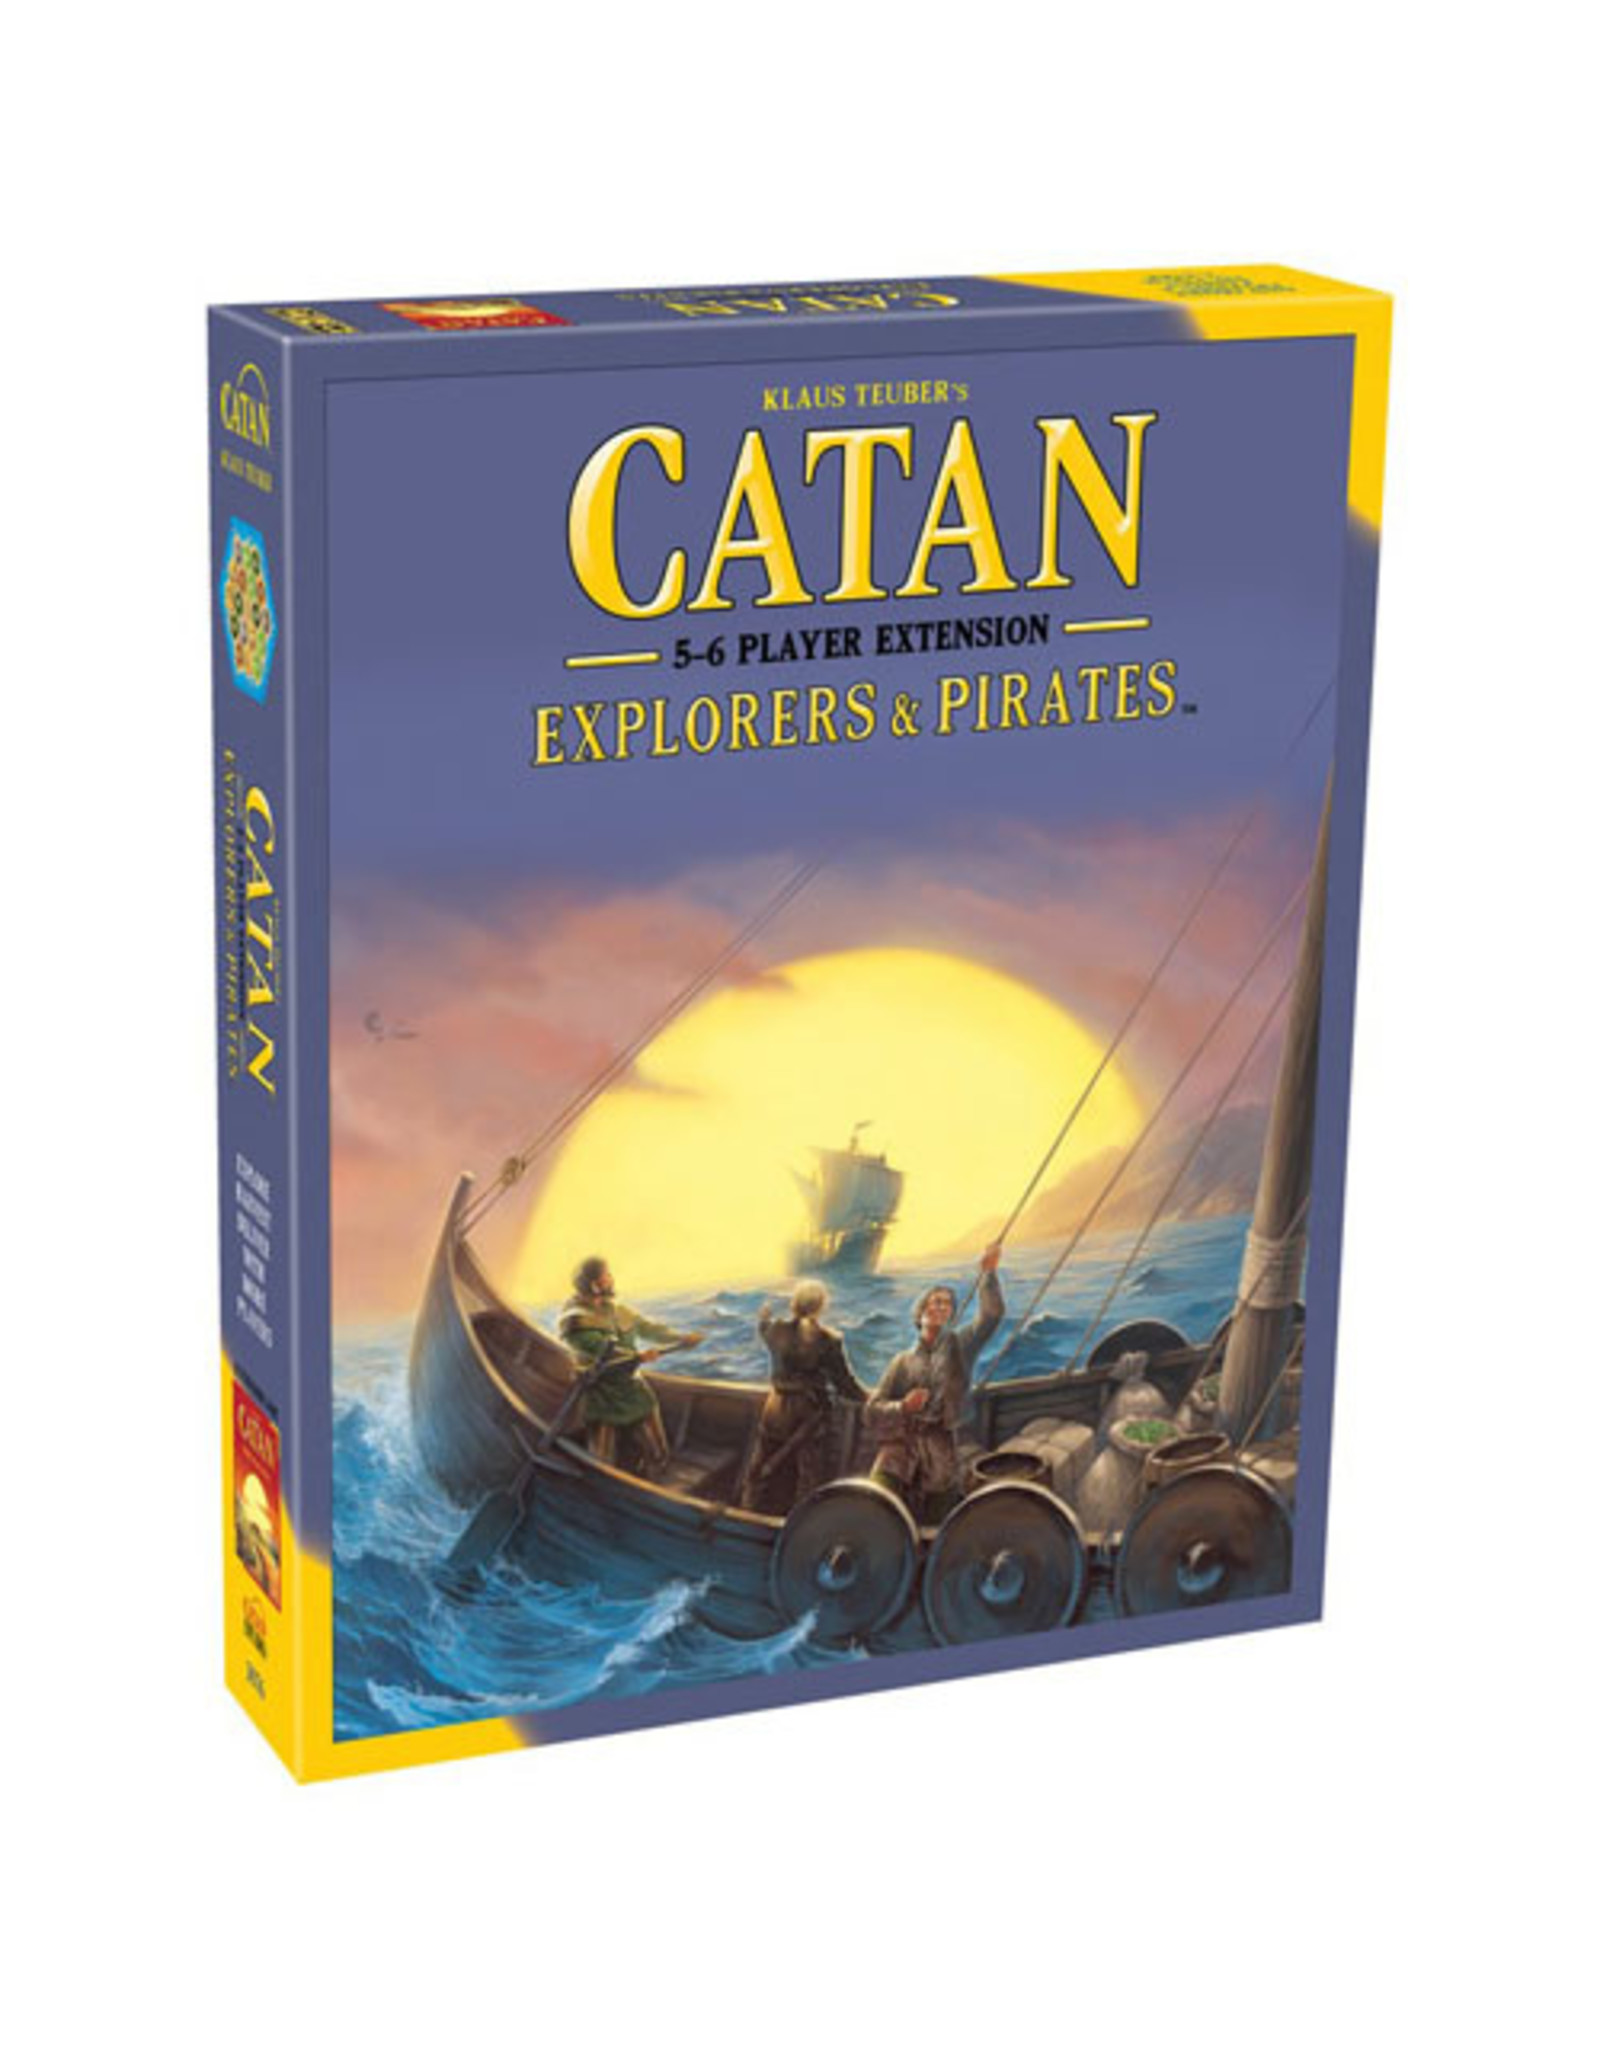 Catan Catan Explorers & Pirates 5-6 Player